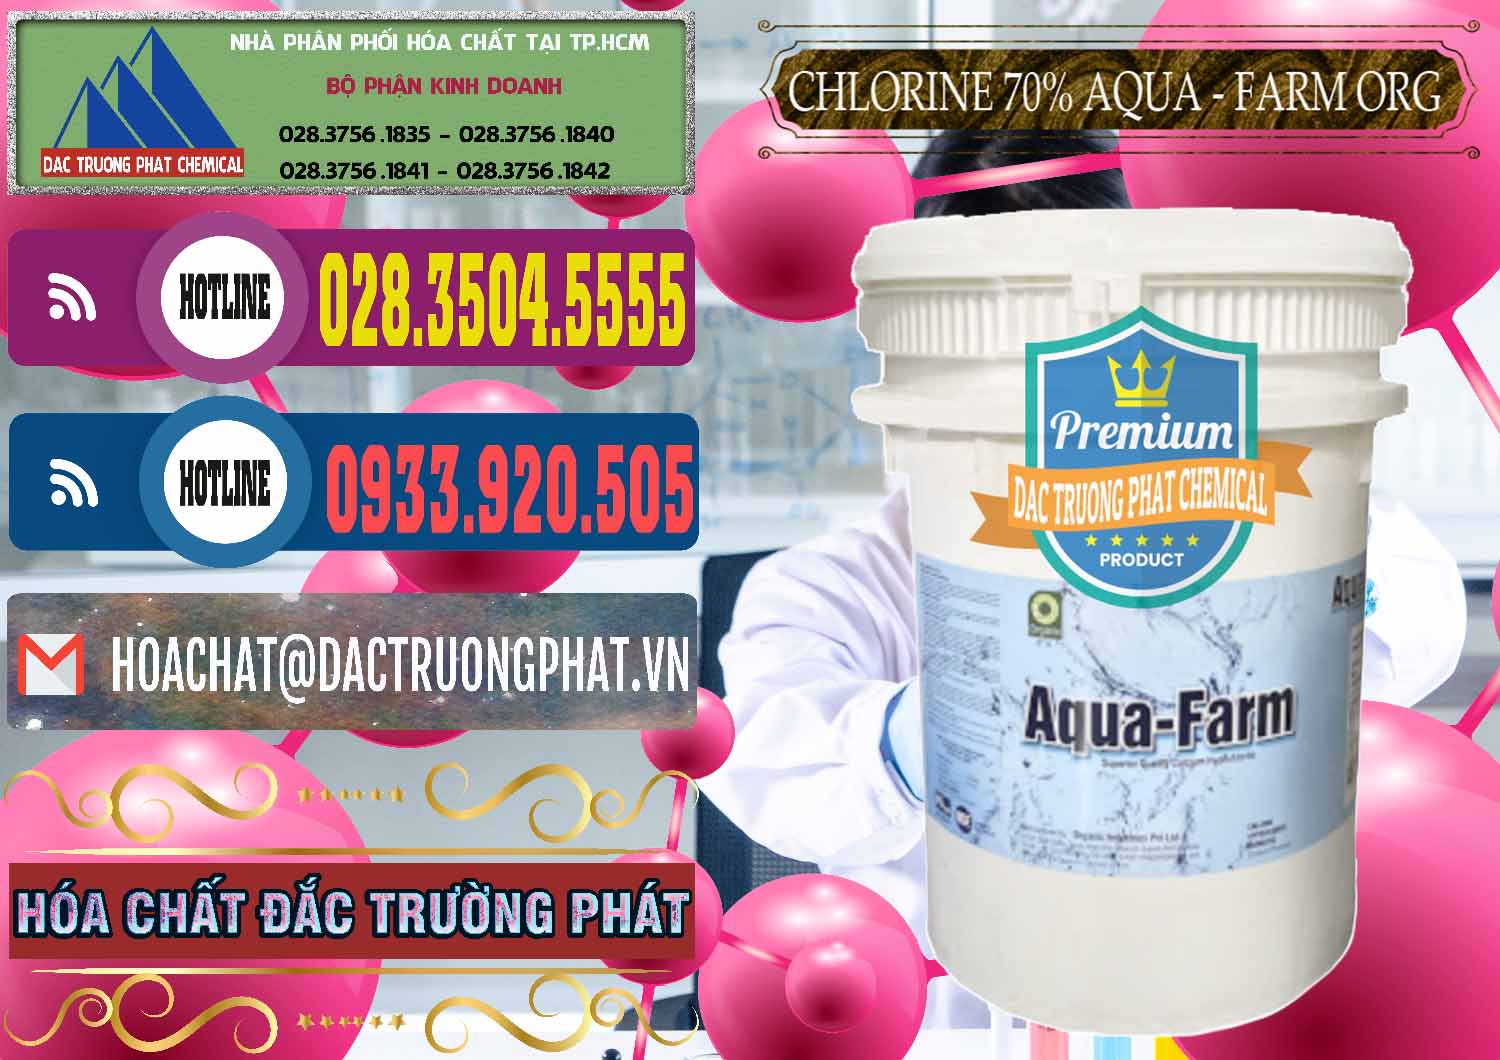 Công ty chuyên cung cấp và bán Chlorine – Clorin 70% Aqua - Farm ORG Organic Ấn Độ India - 0246 - Phân phối - bán hóa chất tại TP.HCM - muabanhoachat.com.vn